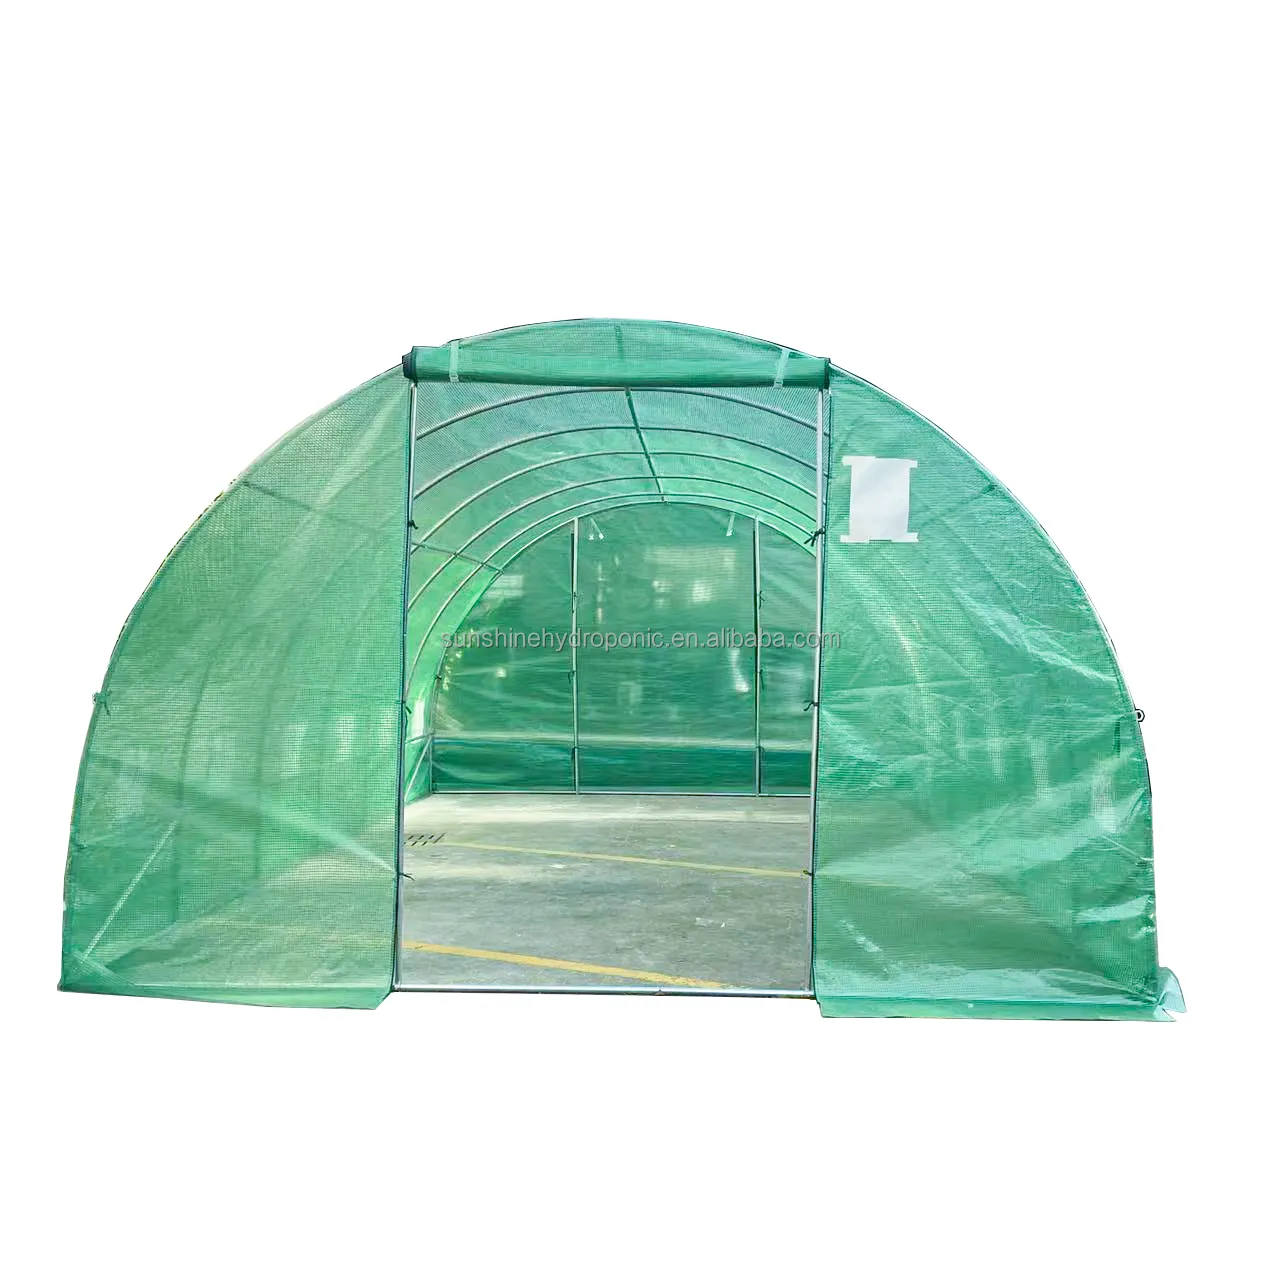 Hangar en plastique serre tunnel de jardin serres commerciales agriculture serre multi-travées serre pour légumes